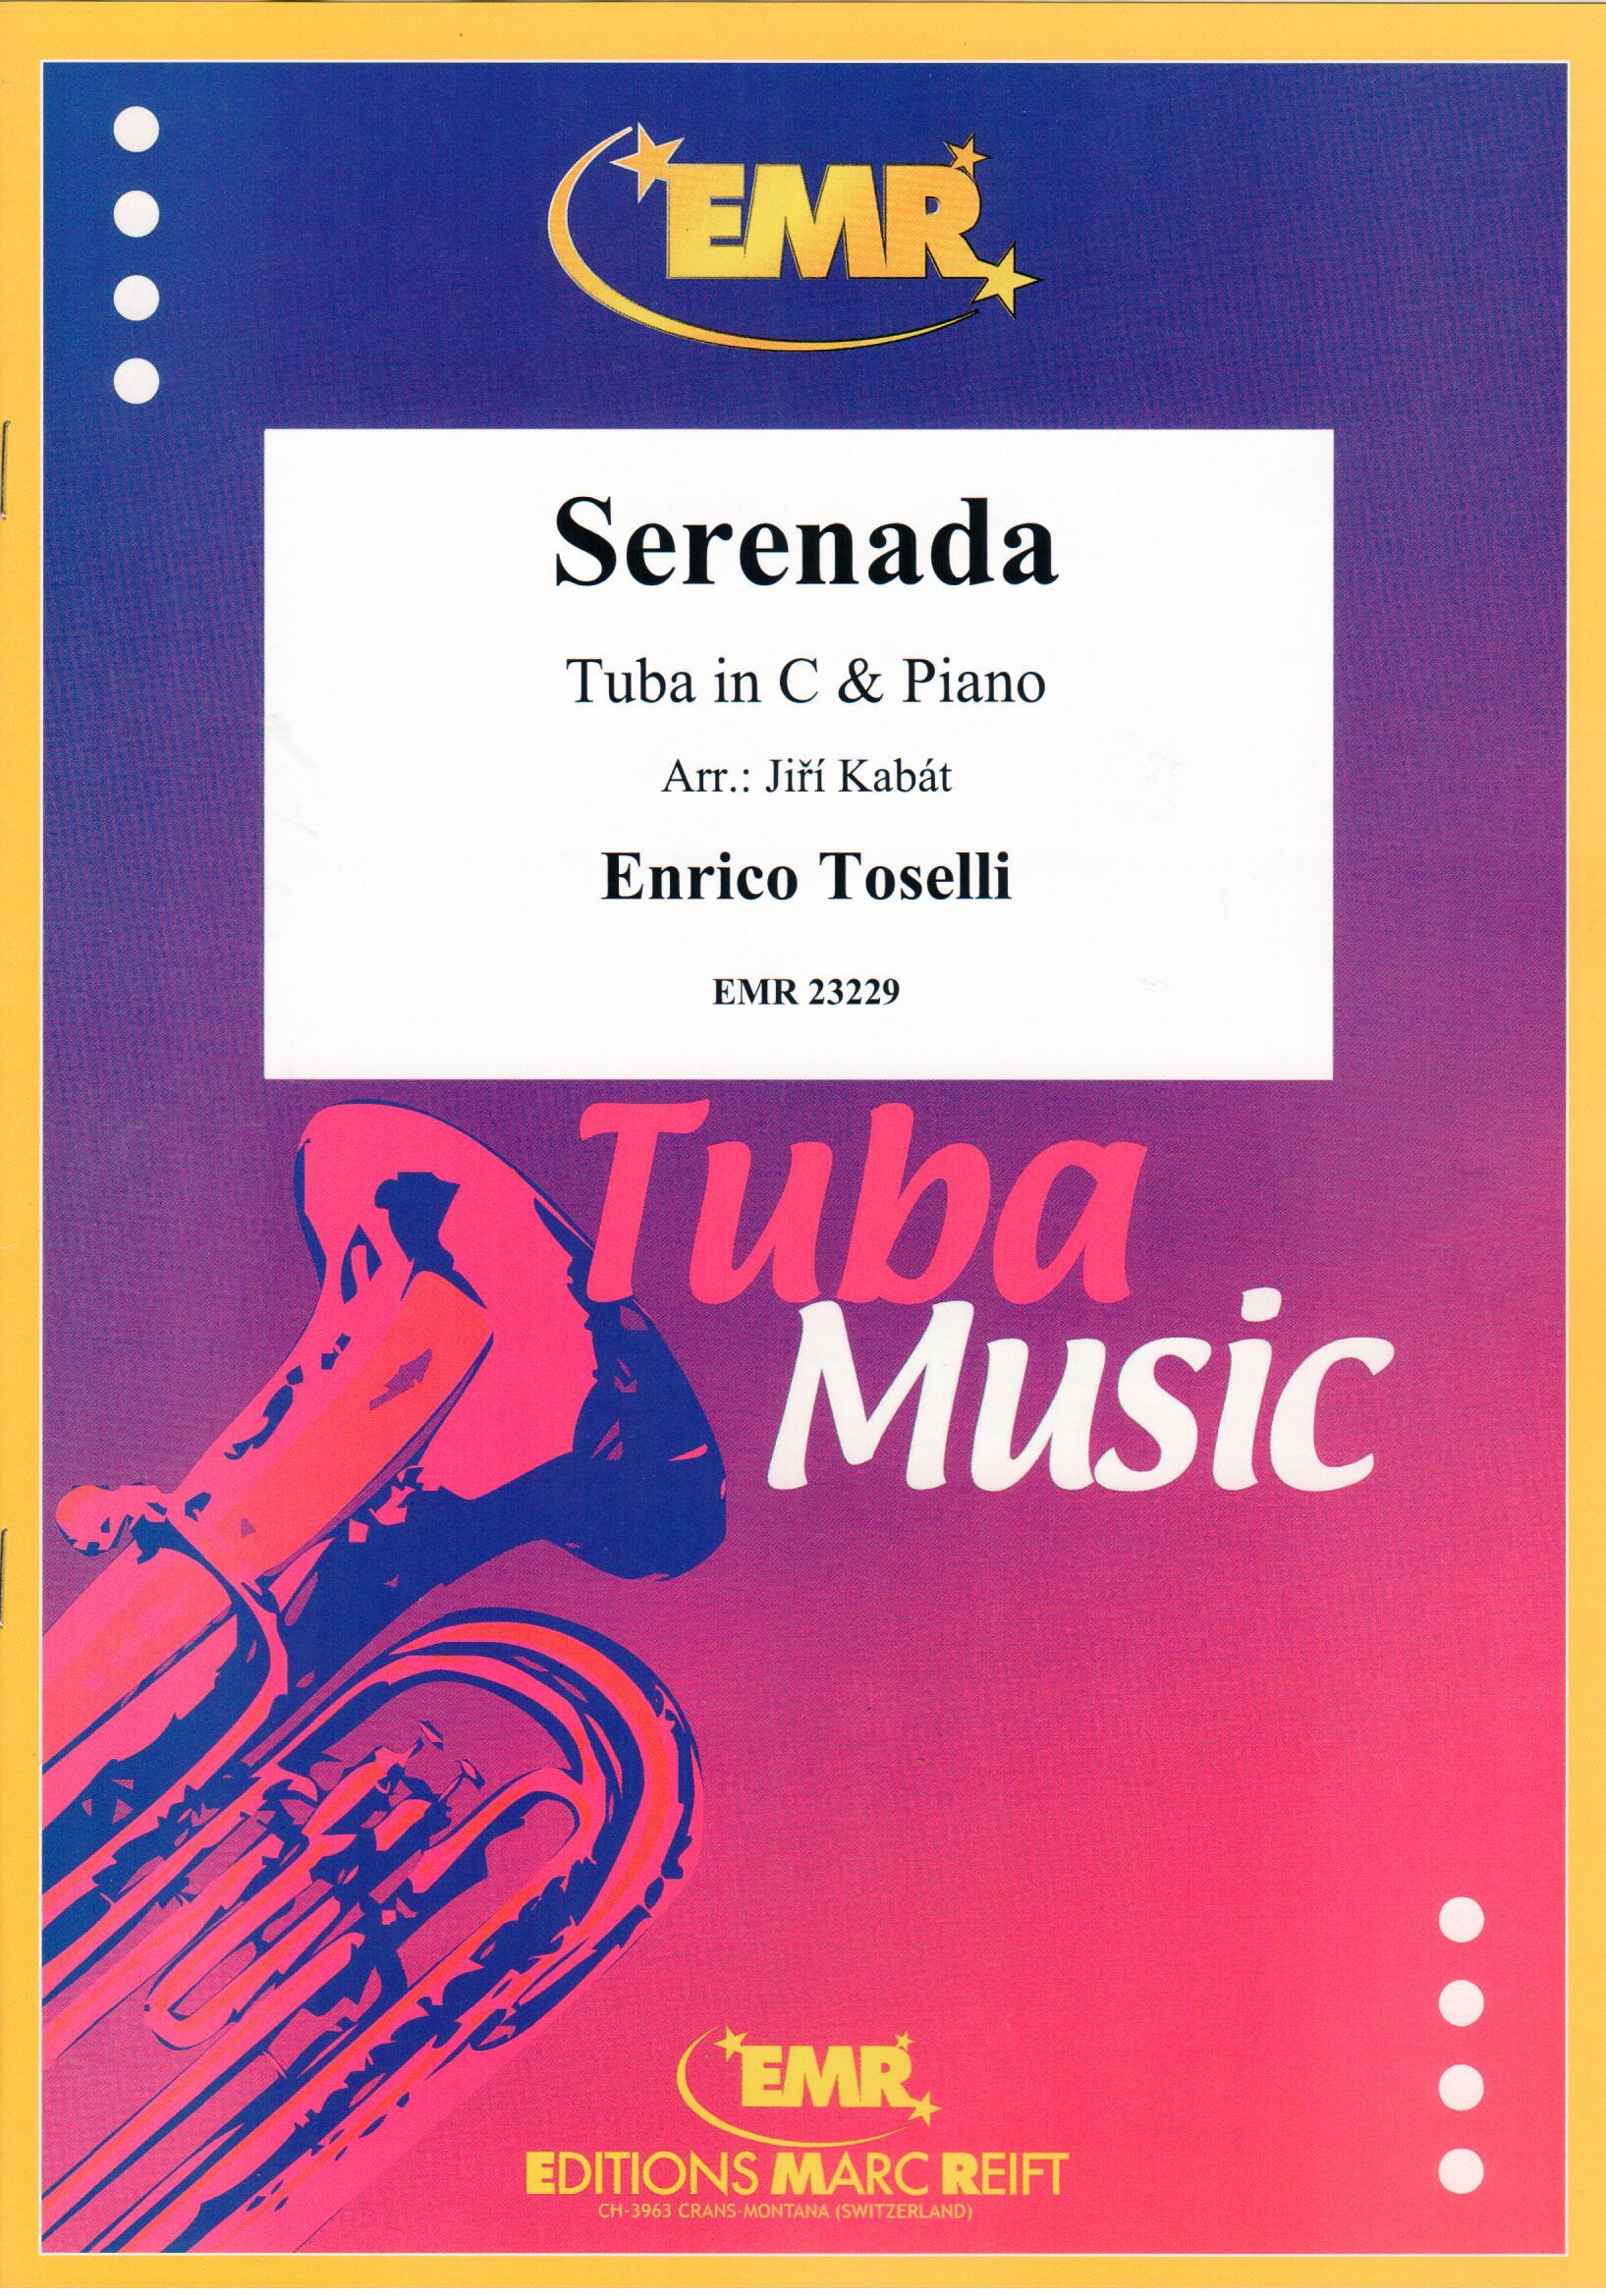 SERENADA, SOLOS - E♭. Bass